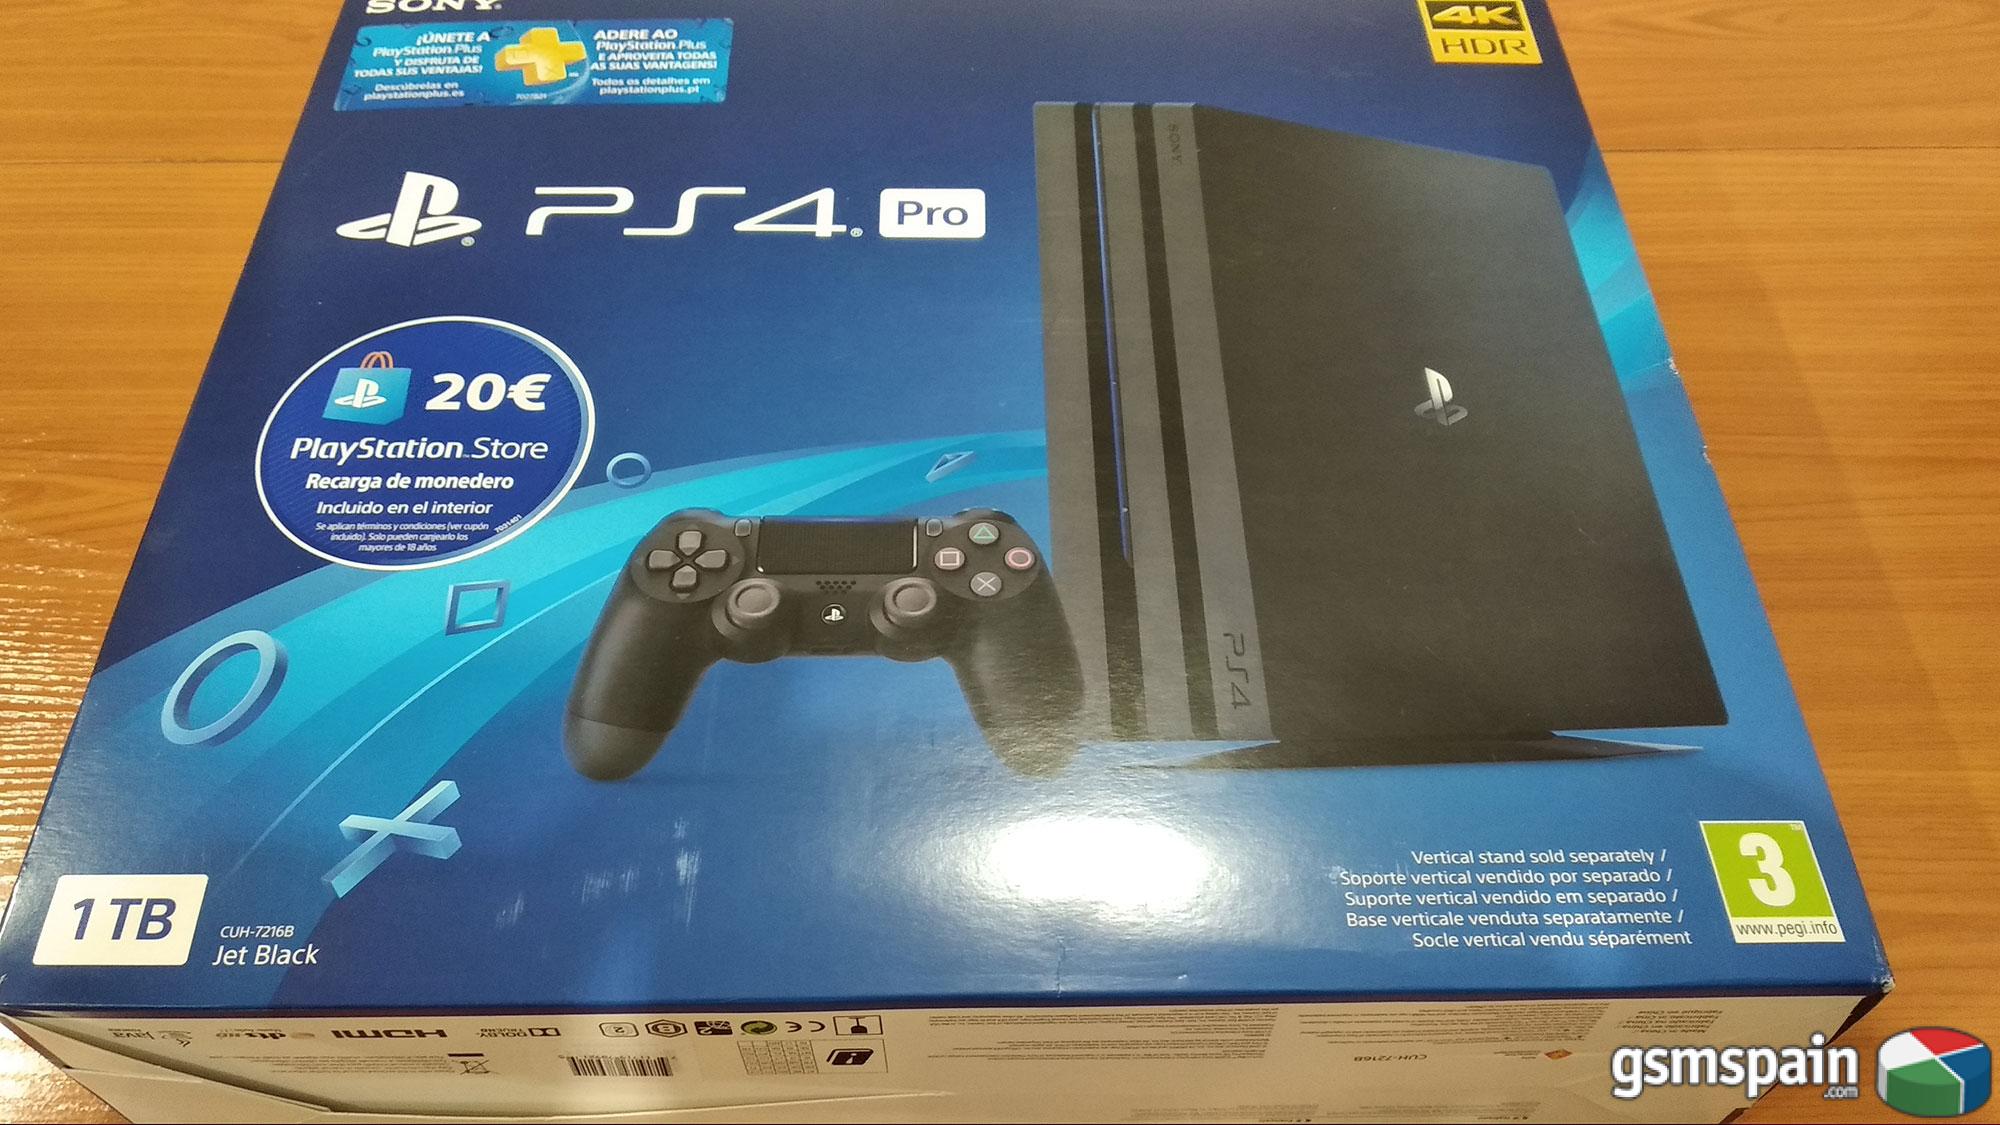 [VENDO] Playstation 4 Pro (PS4) - Consola de 1TB + 20 euros Tarjeta Prepago NUEVA A ESTRENAR